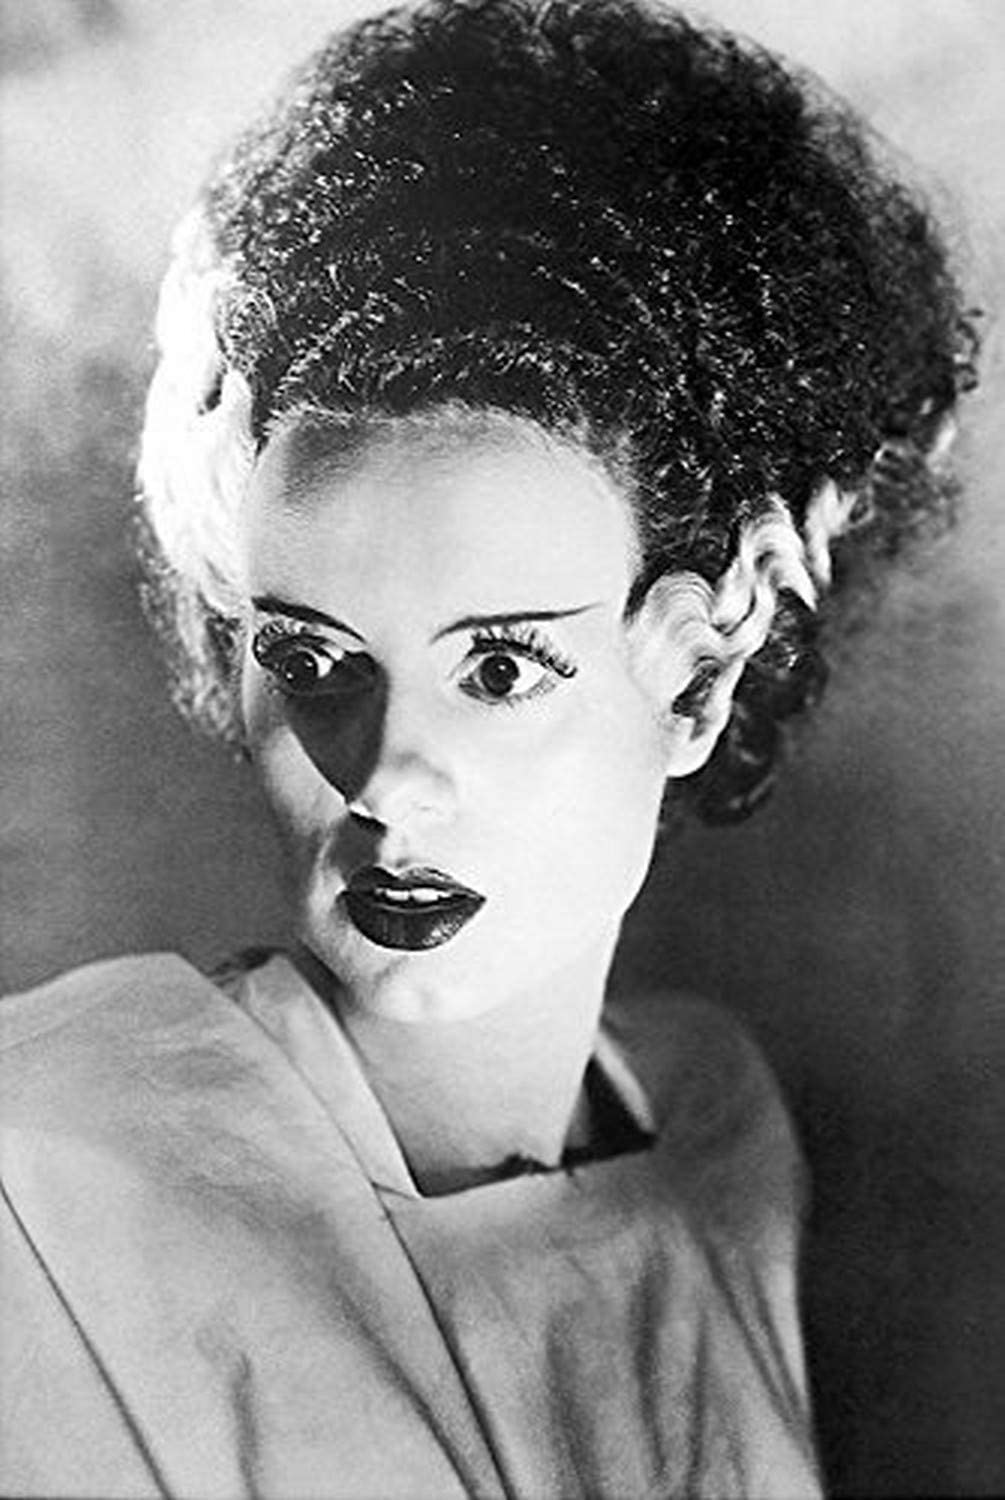 Bride of Frankenstein - Wikipedia